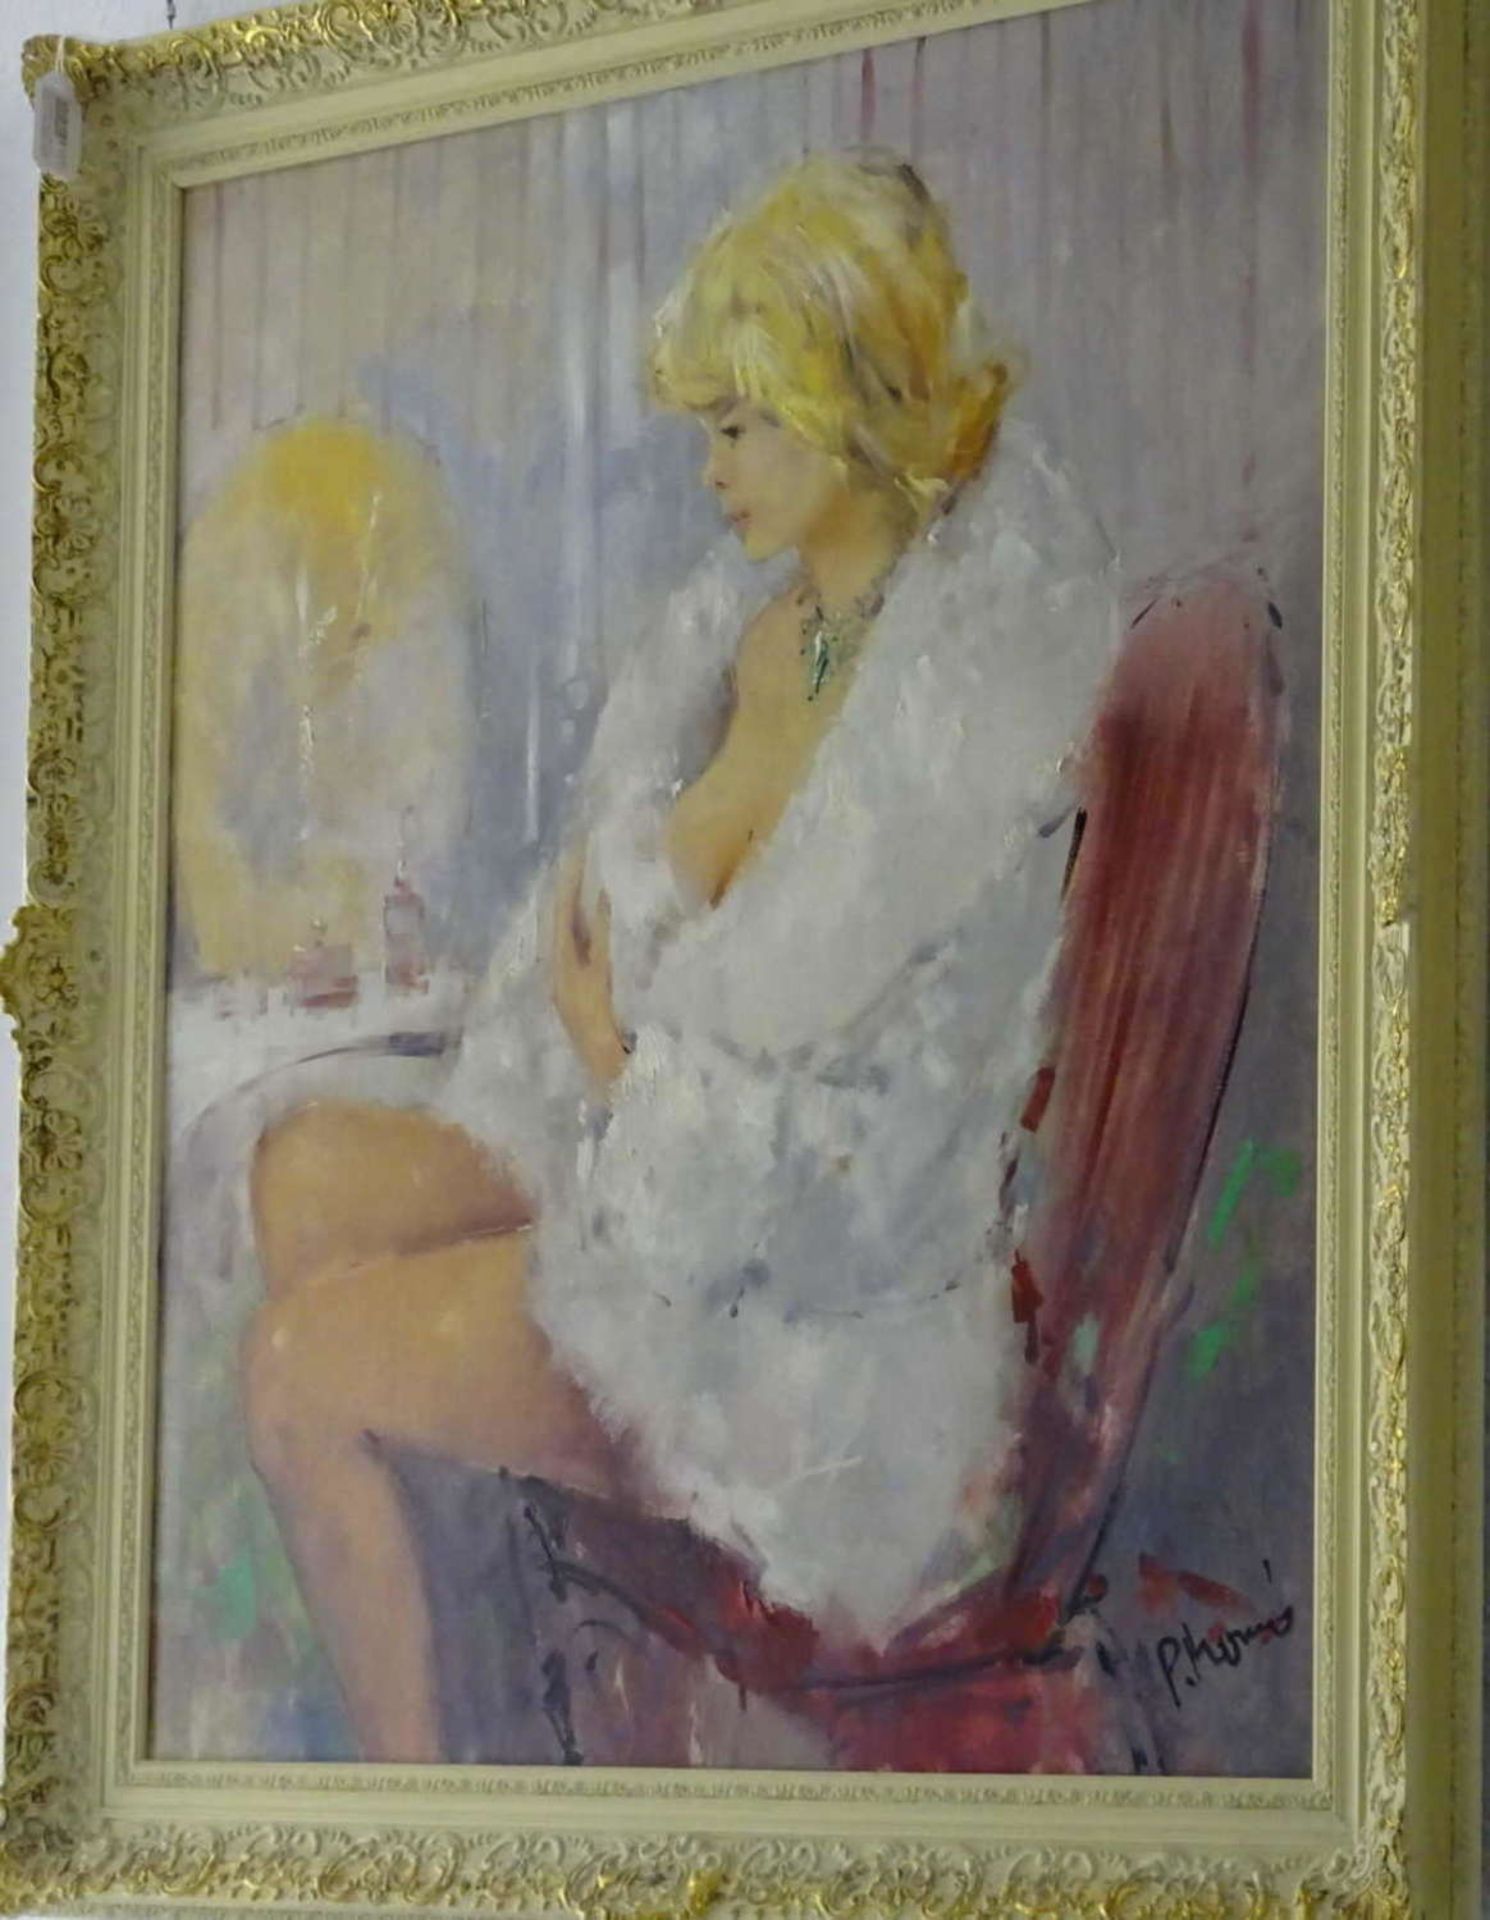 Paul Henze-Morro 1925-1972, Ölgemälde auf Leinwand "junge Dame vor dem Spiegel" rechts unten - Bild 2 aus 3